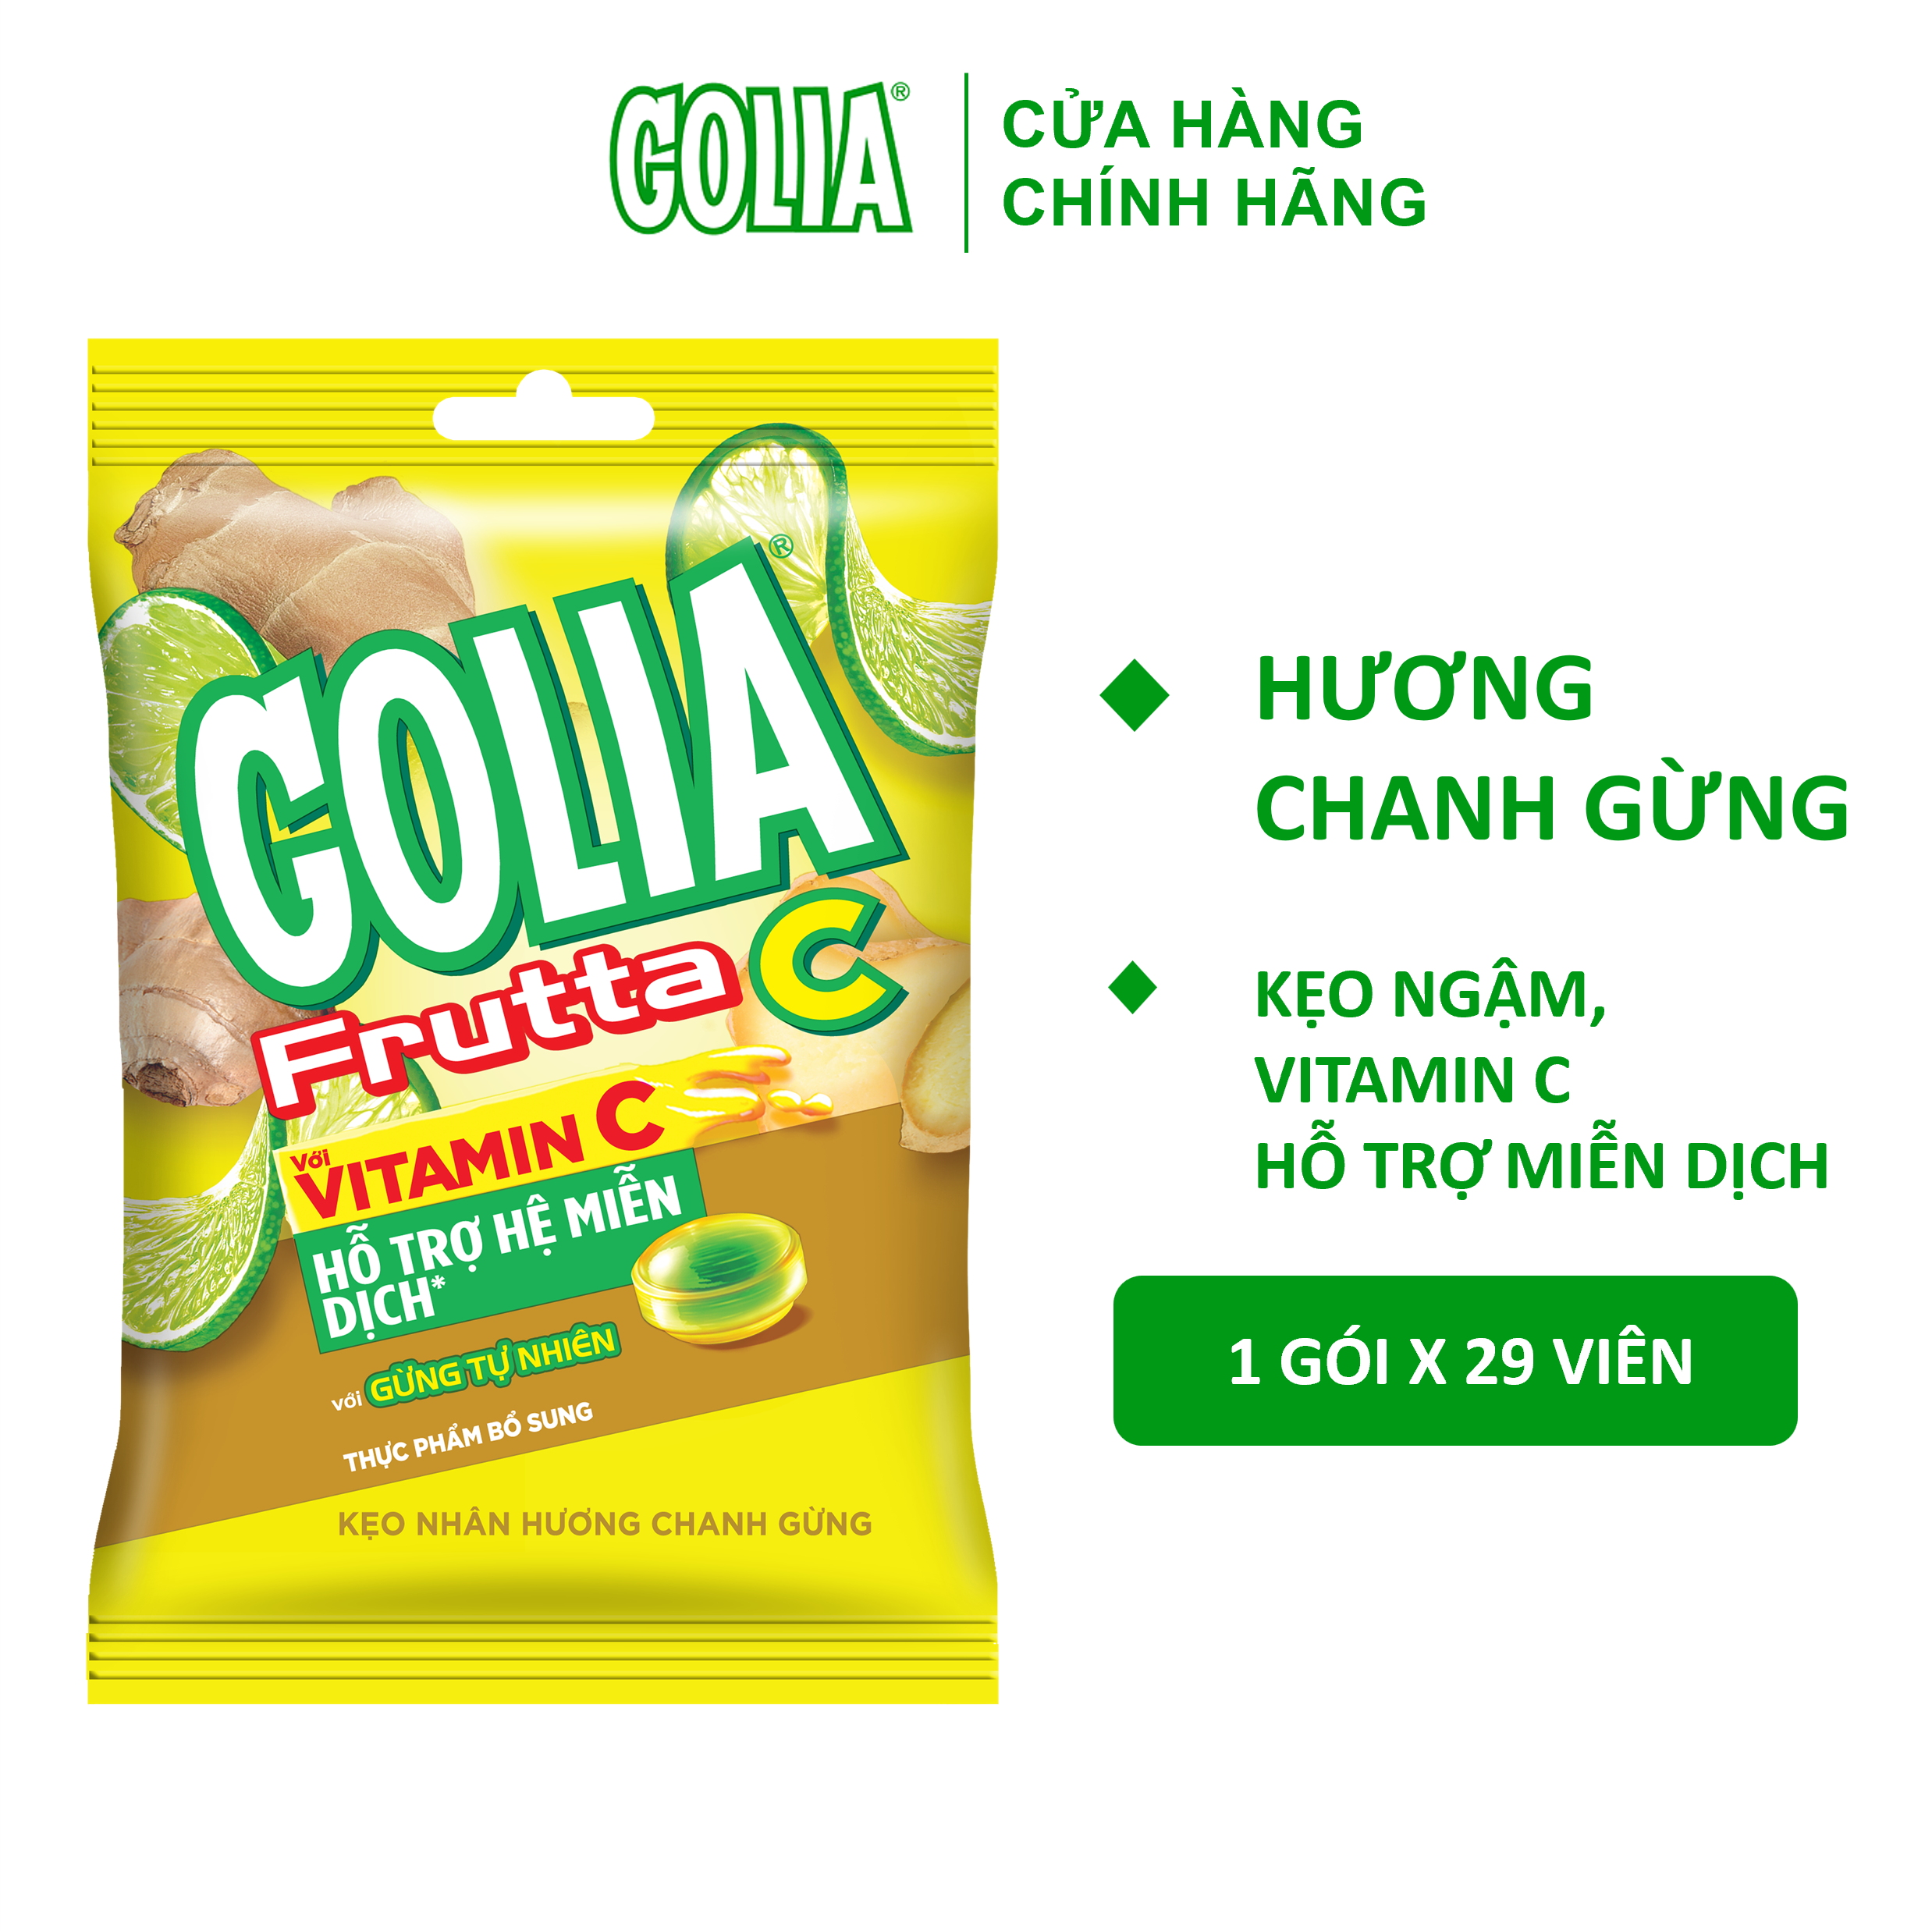 Kẹo Nhân Hương Chanh Gừng Vitamin C Golia Frutta C Gói 95.7 g